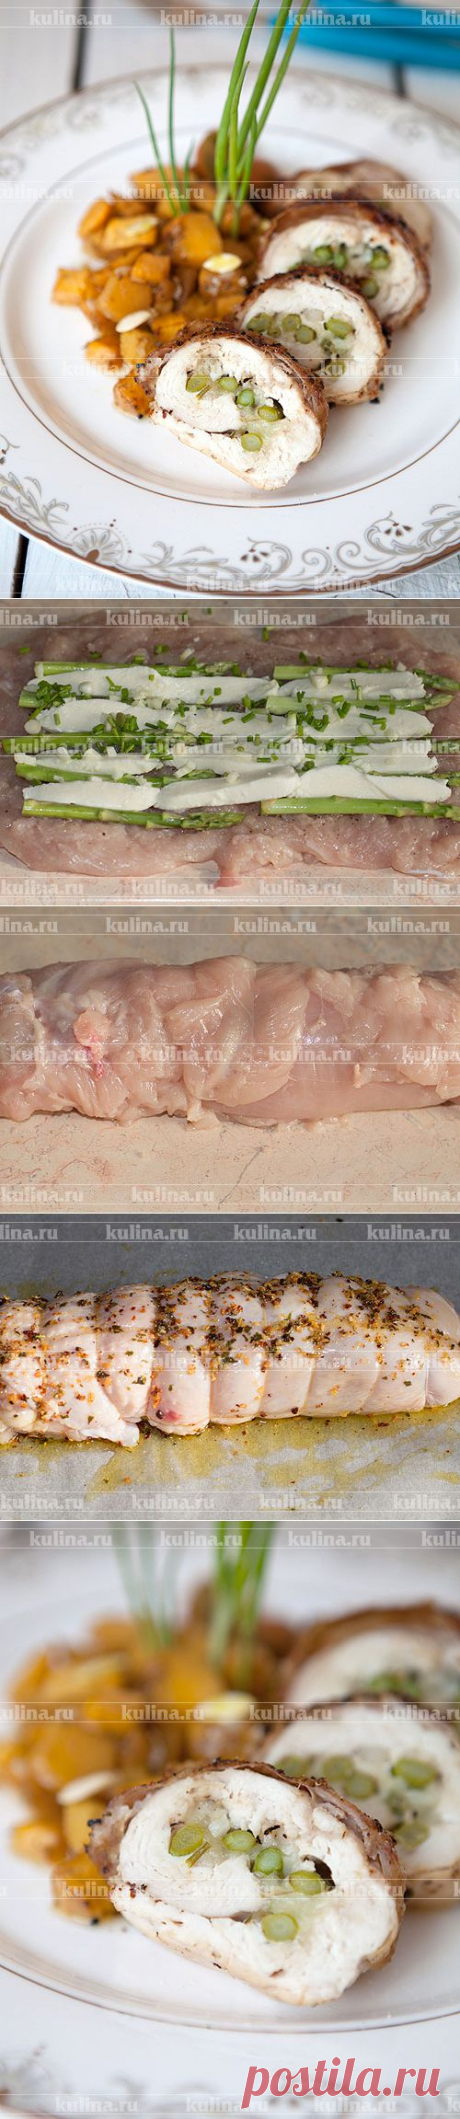 Куриный рулет со спаржей – рецепт приготовления с фото от Kulina.Ru